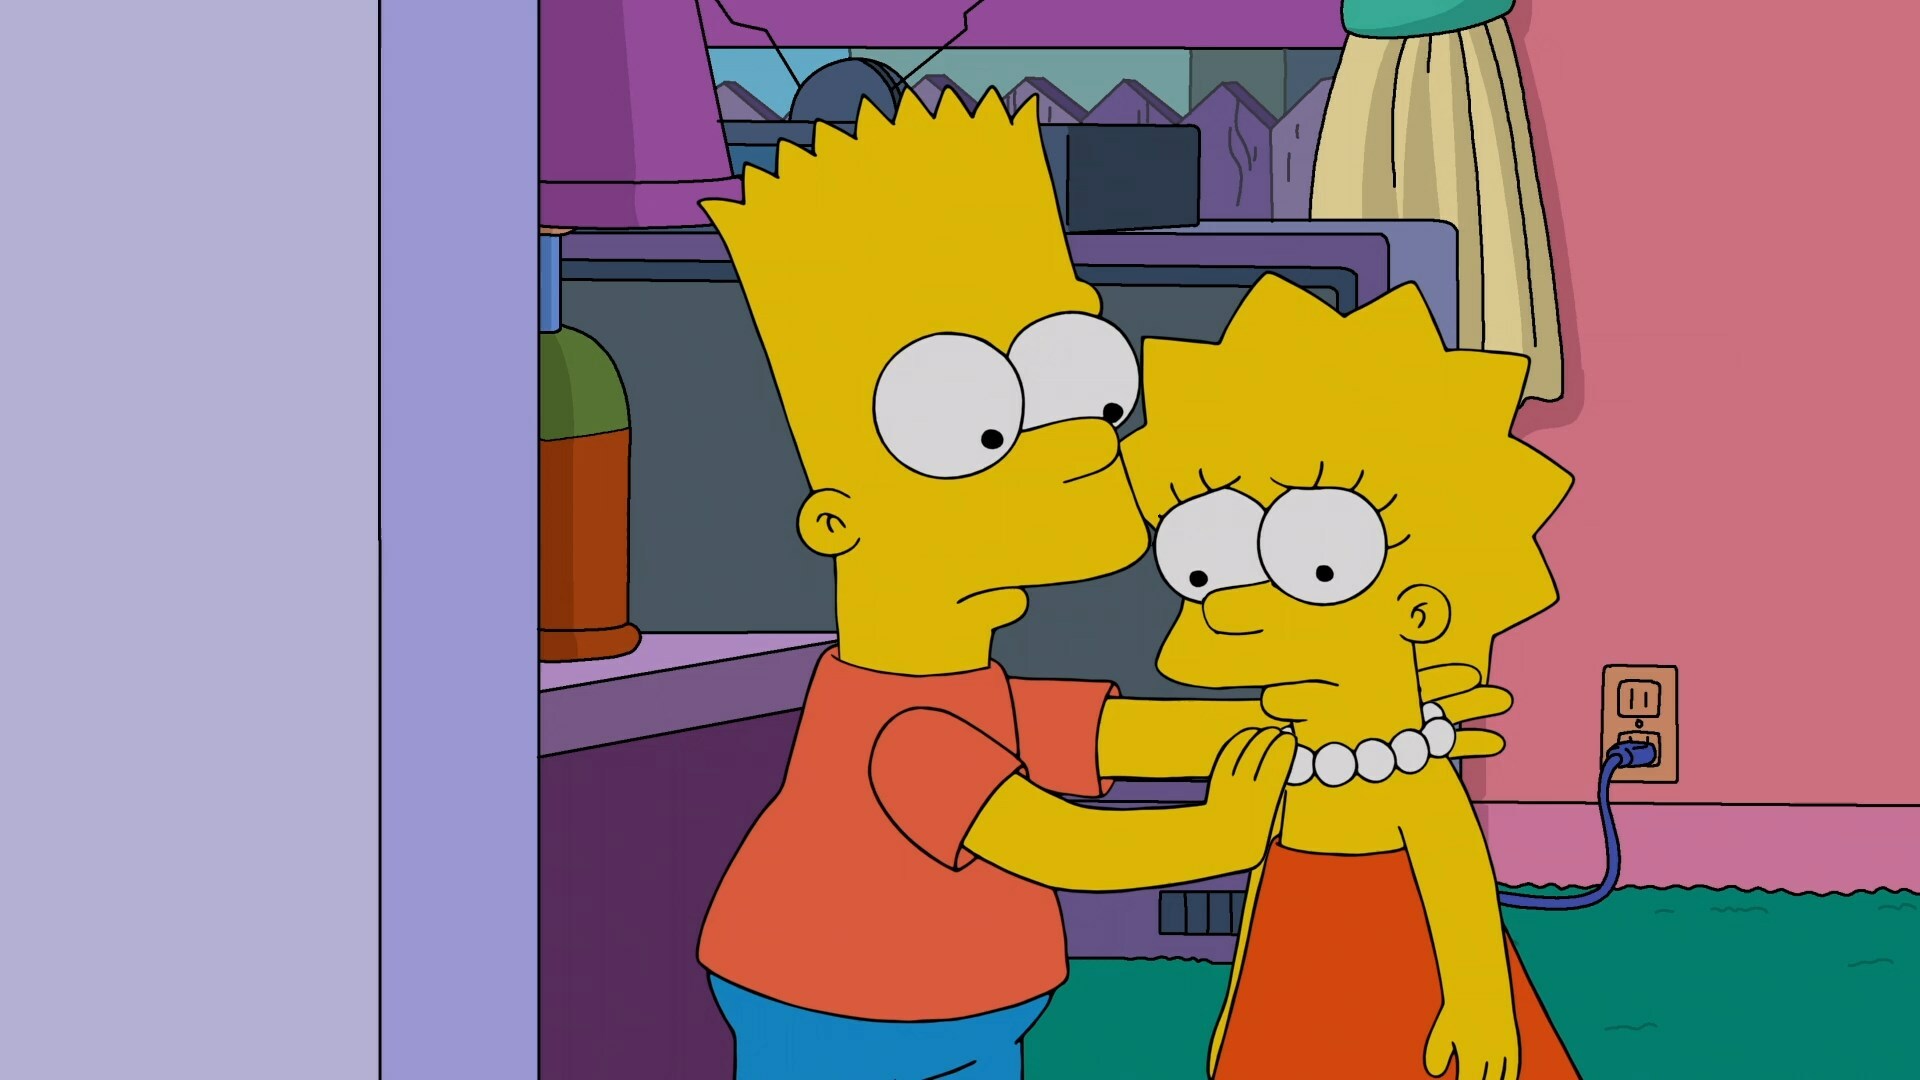 The.Simpsons.S33E02.WEB-DL.1080p.Ukr.Eng.[Mazepa].mkv_snapshot_10.30.630.jpg